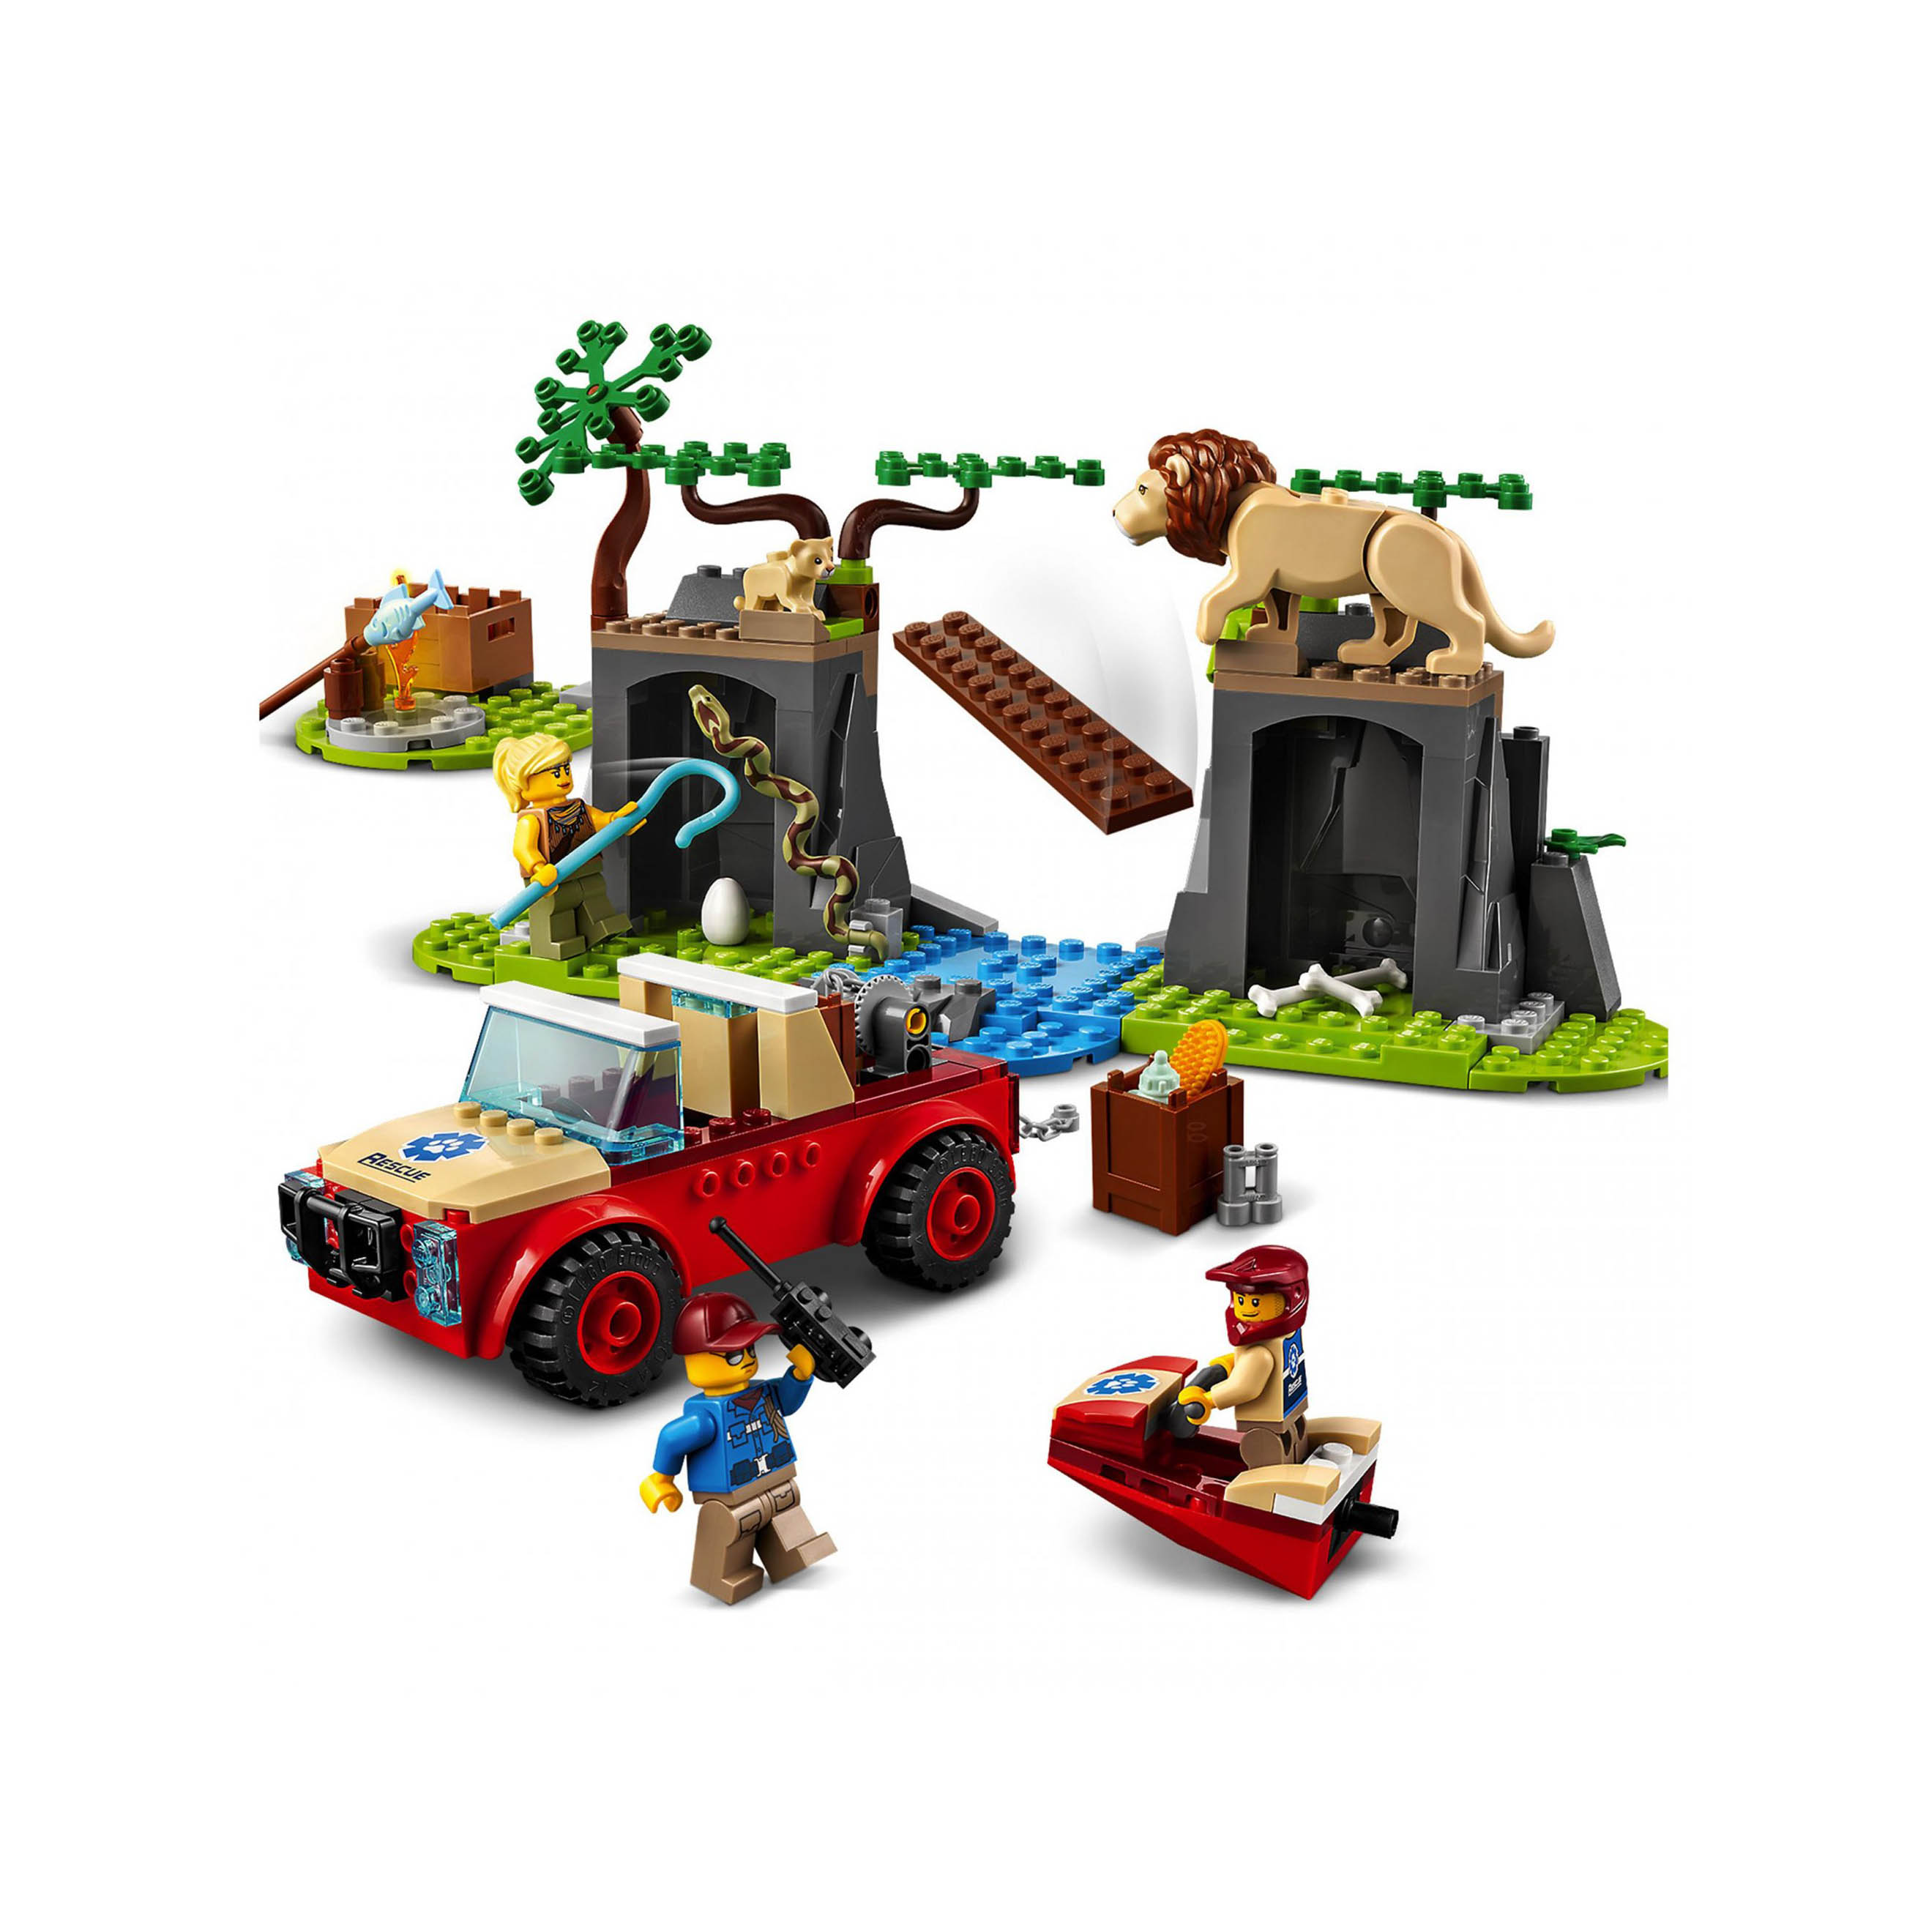 LEGO City Wildlife Fuoristrada di Soccorso Animale, Set per Bambini di 4 anni co 60301, , large